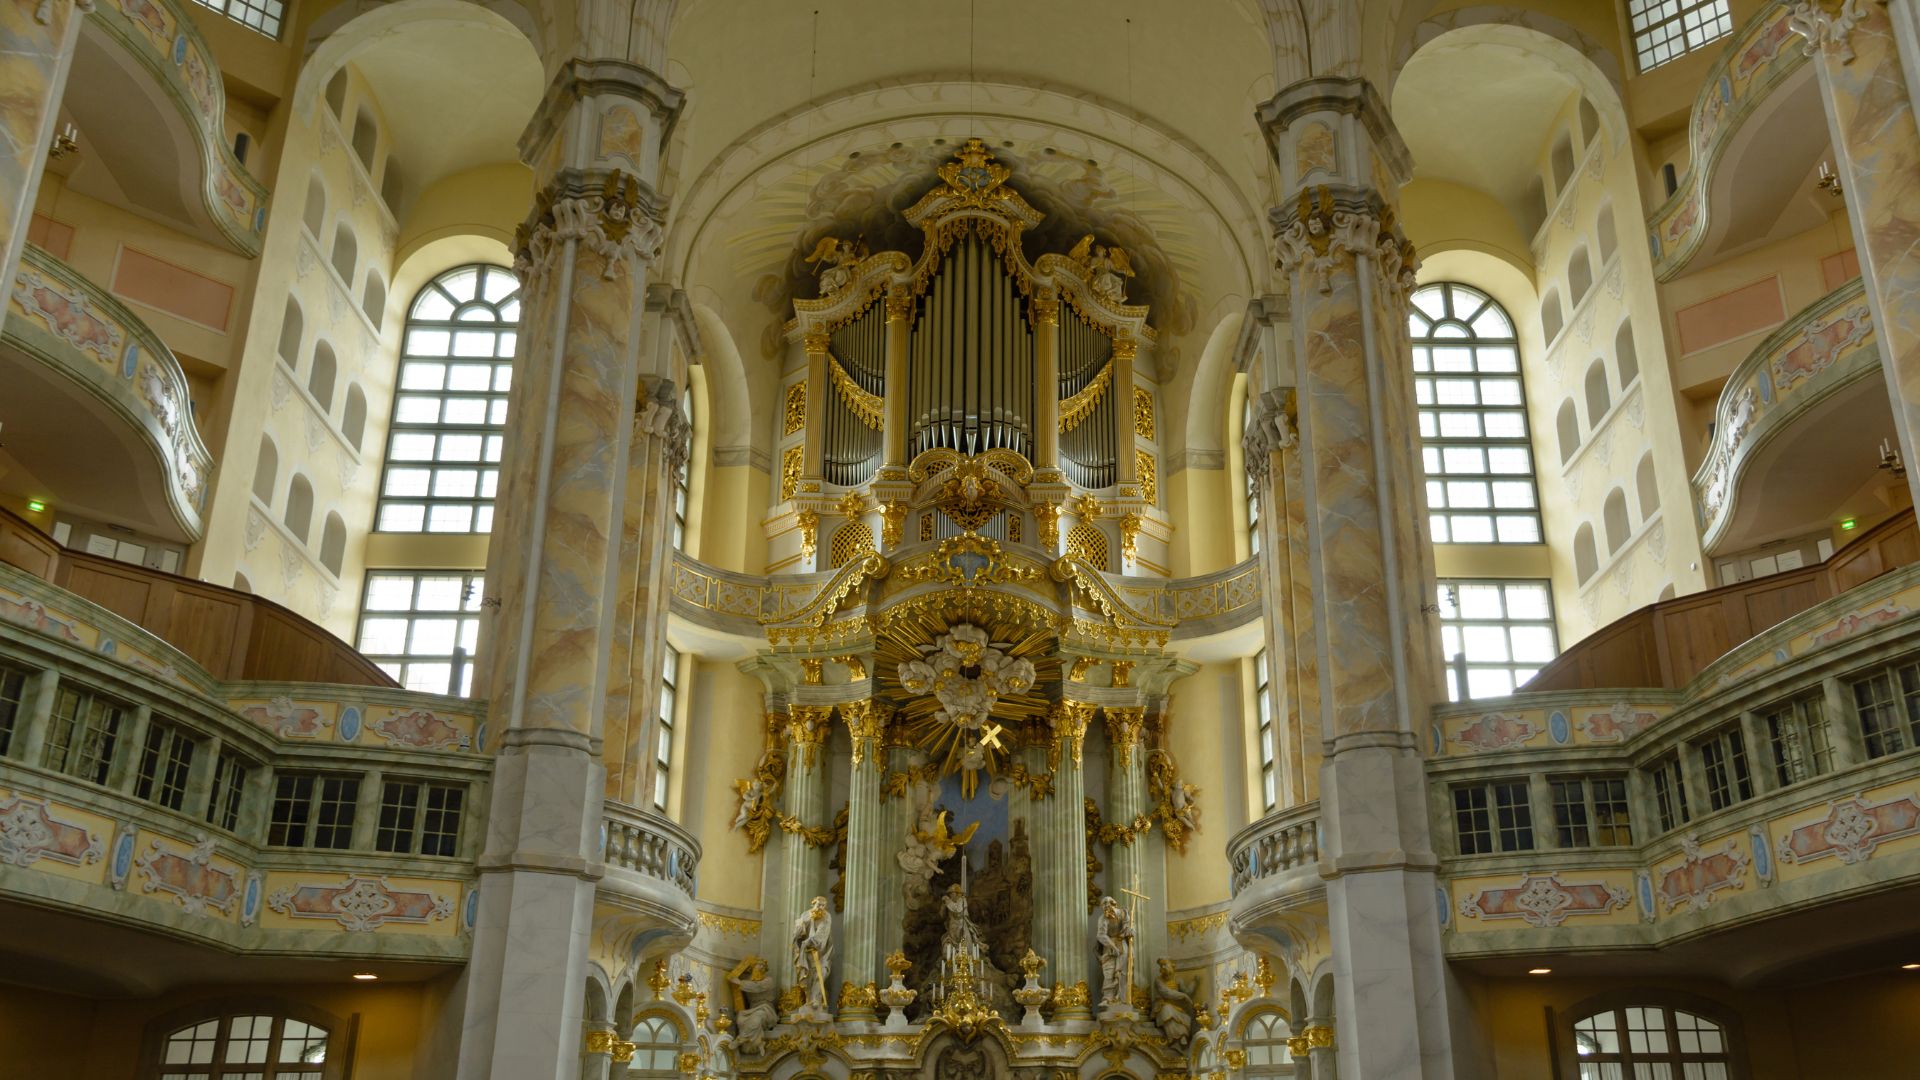 Wnętrze luterańskiej świątyni z widokiem na część główną.